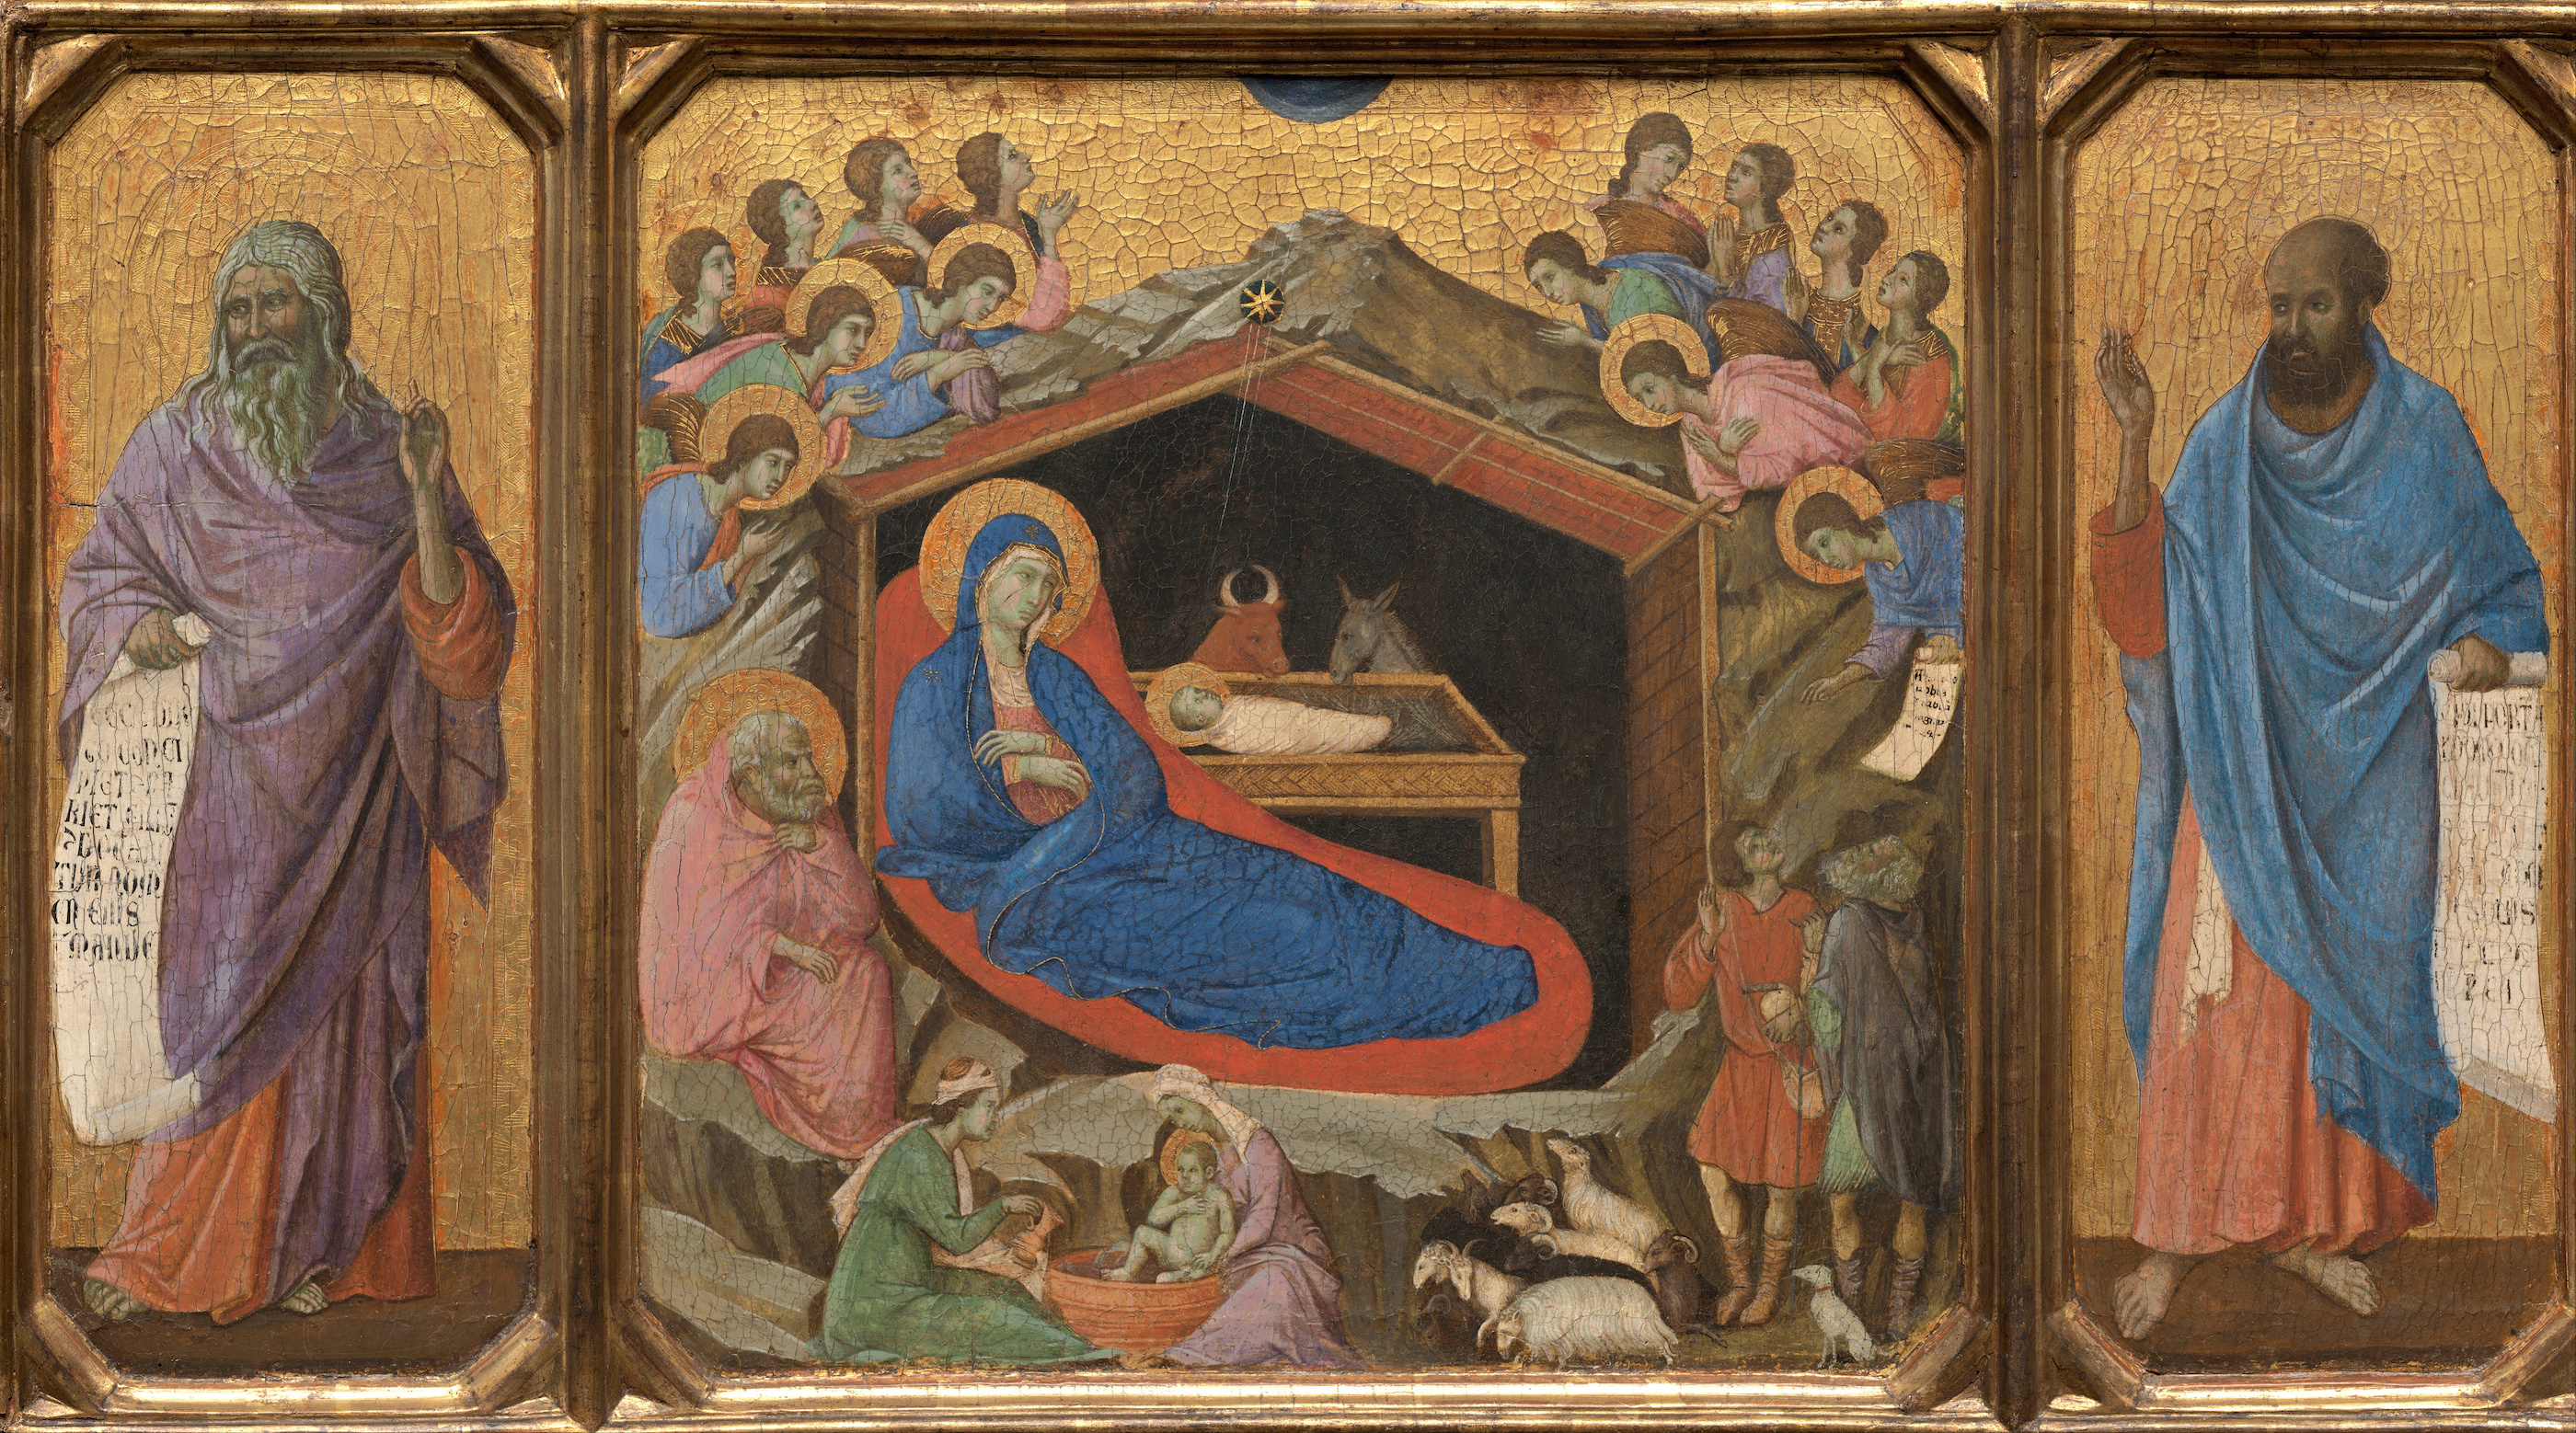 La Nativita' con i profeti Isaia ed Ezechiele by Duccio di Buoninsegna - 1308 - 1311 - 870 x 480 cm 